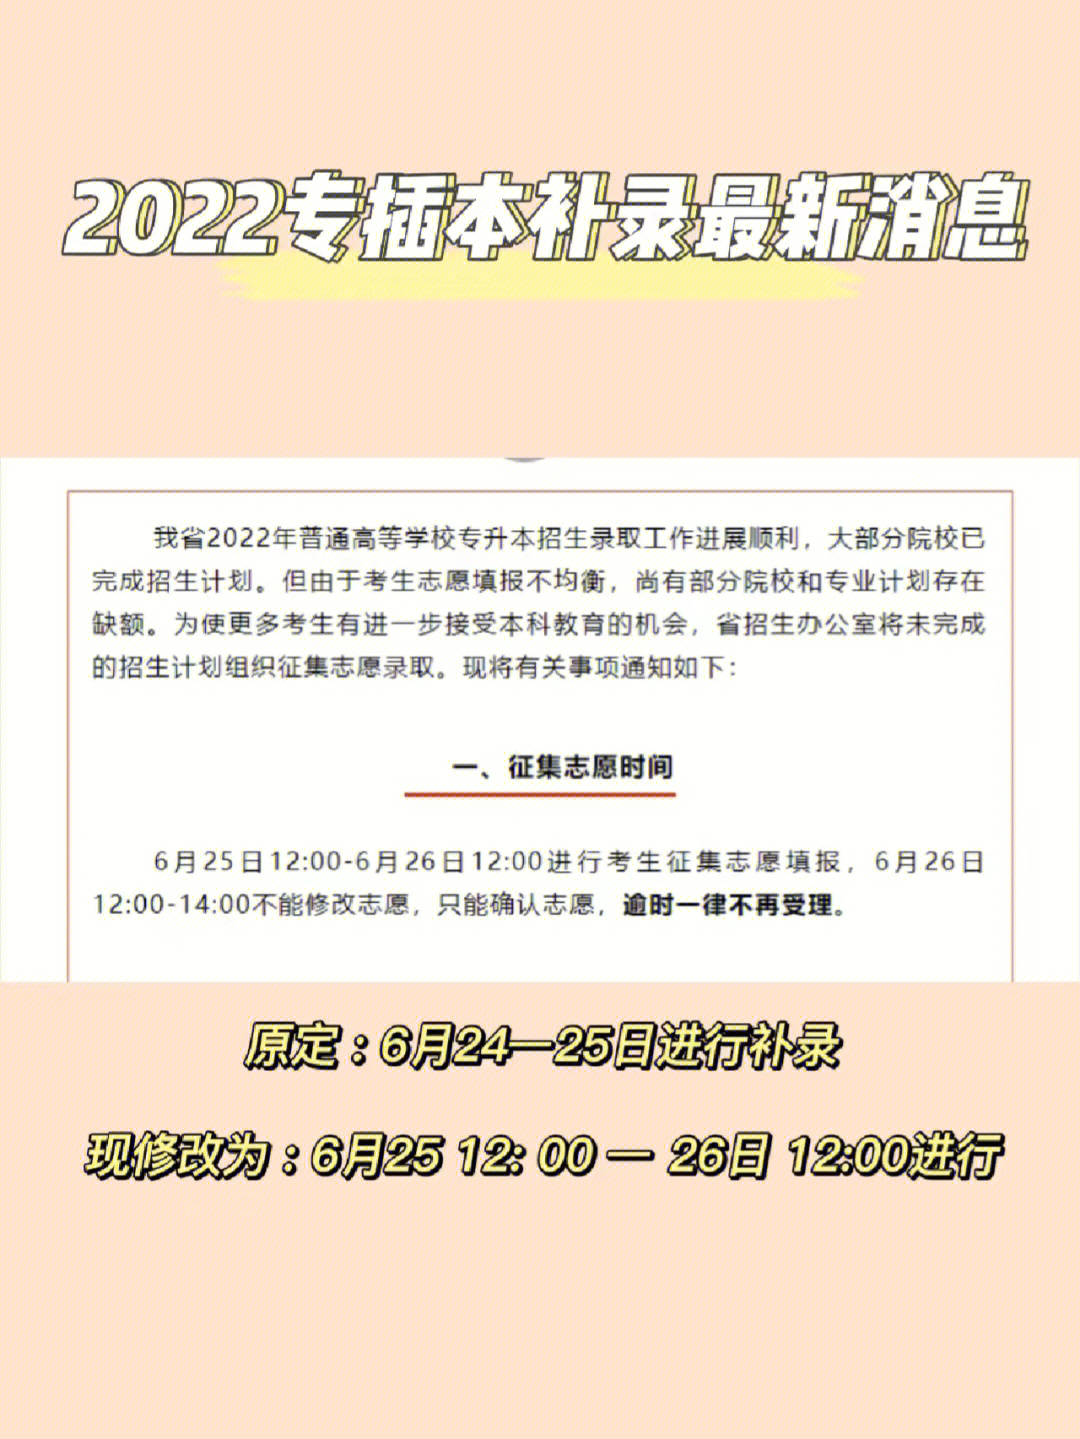 2022广东专插本补录,教育考试院最新消息通知601576 原定补录